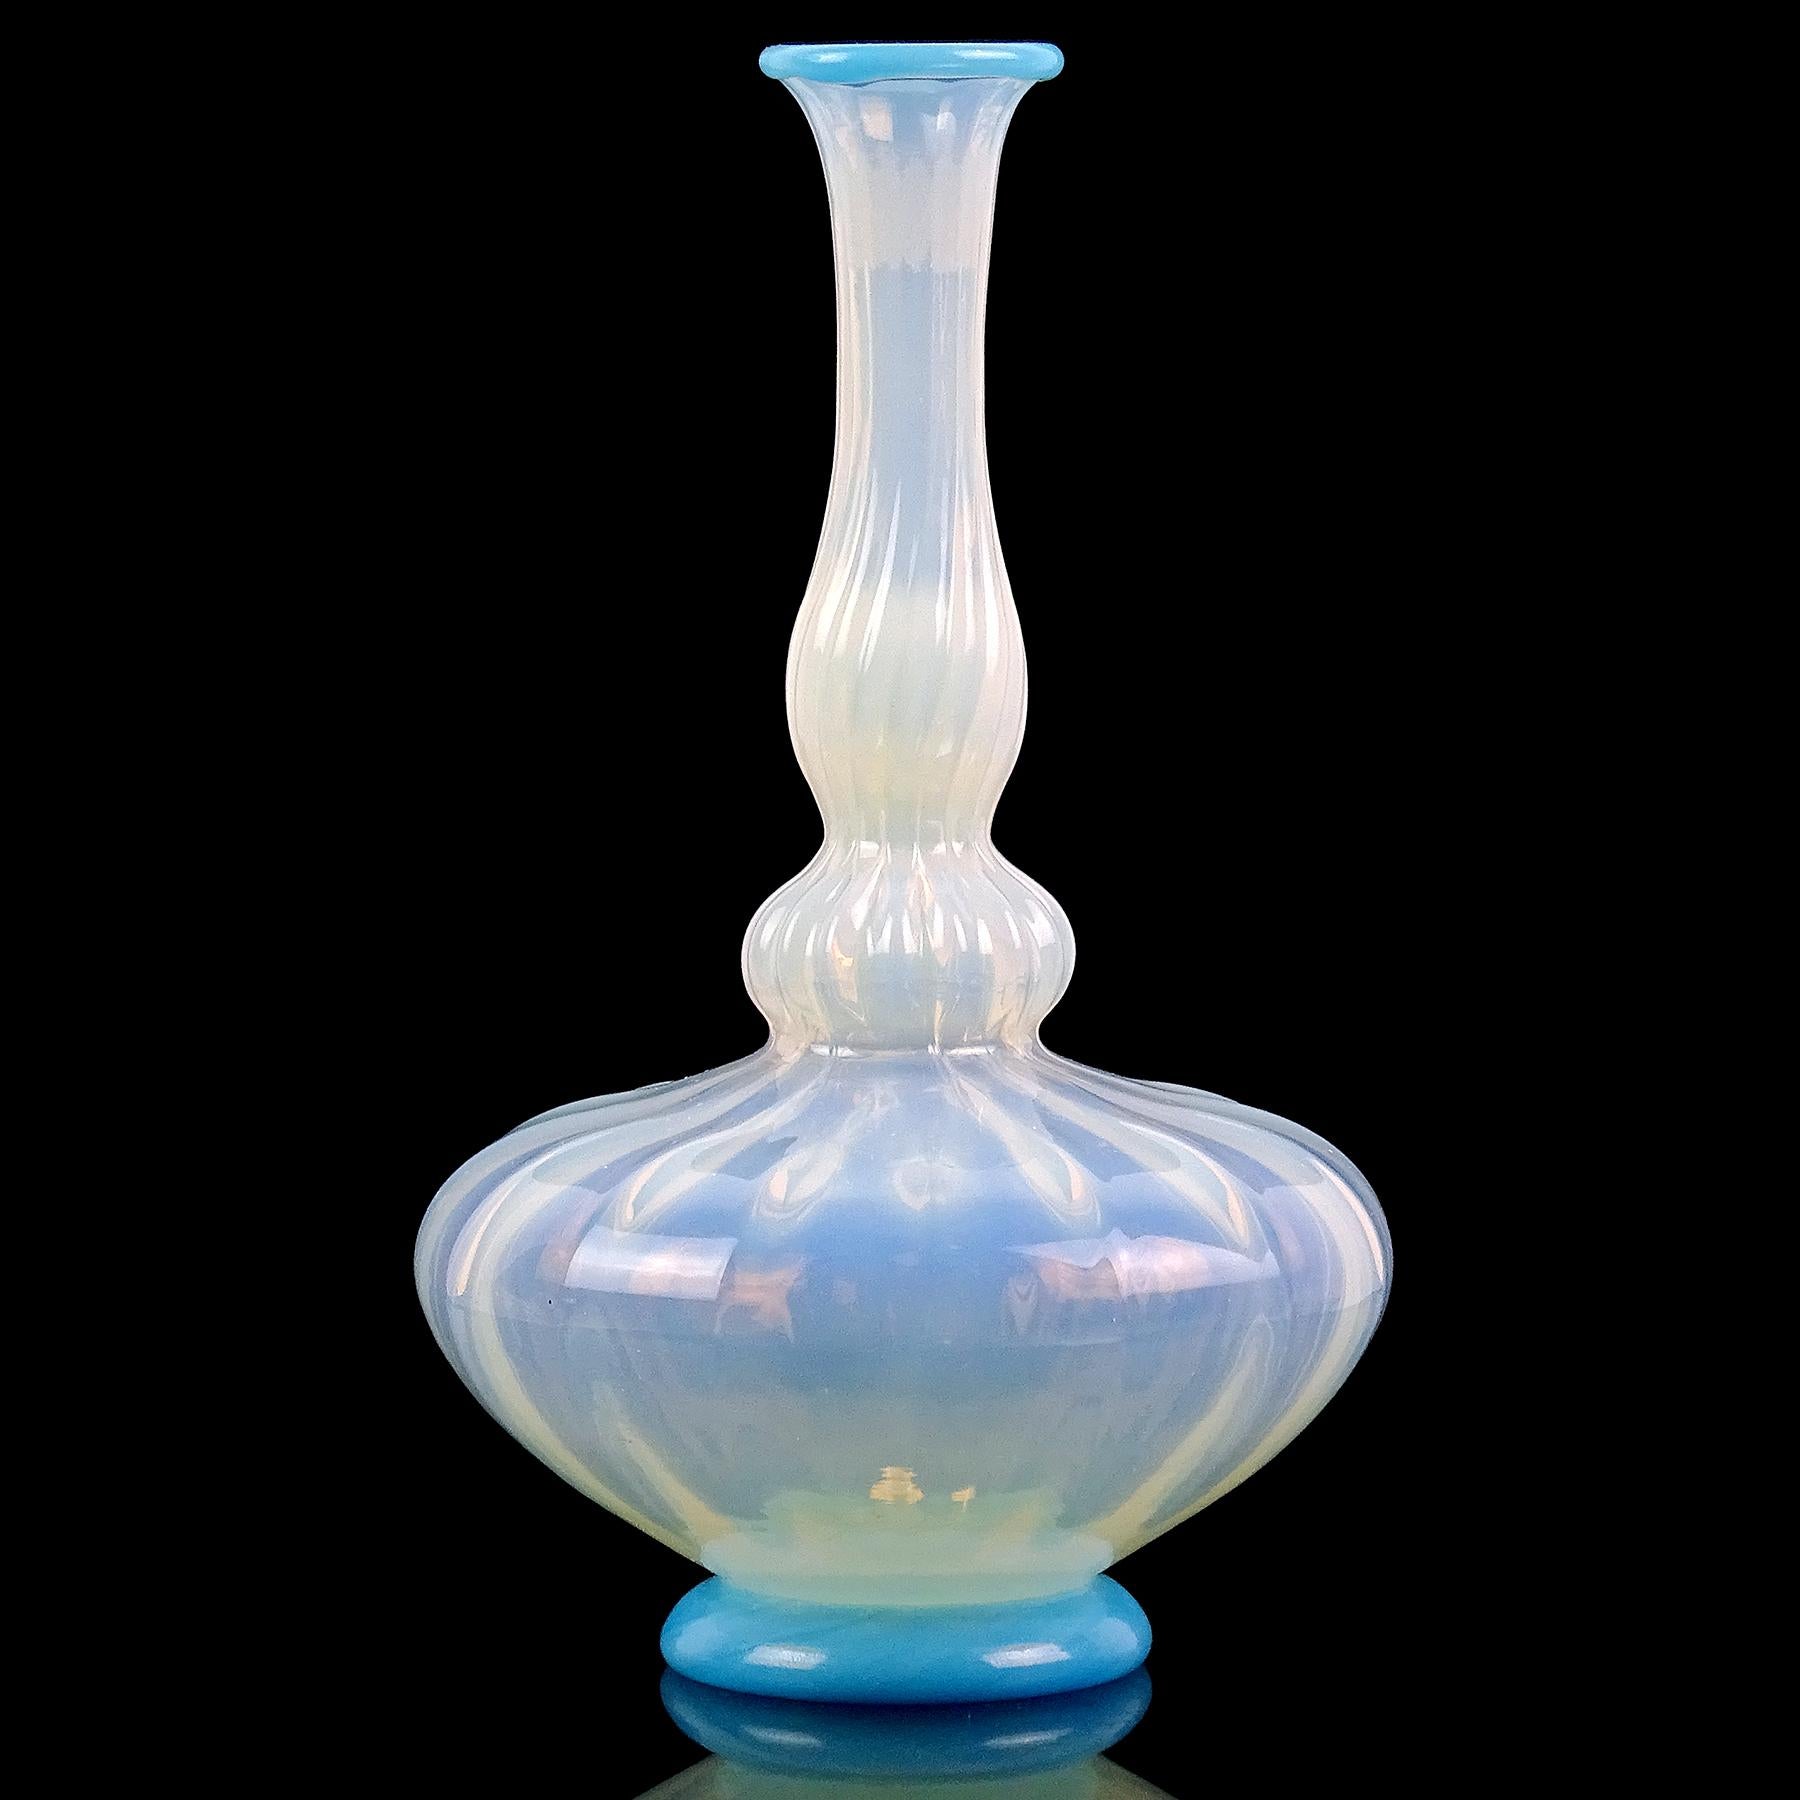 Schöne antike venezianische / frühe Murano mundgeblasenen opalisierenden weißen und blauen italienischen Kunstglas Blumenvase. Sie hat die Form einer Flaschengeistflasche mit gefalteter Oberfläche am Körper. Sie hat himmelblaue Akzente am Rand der